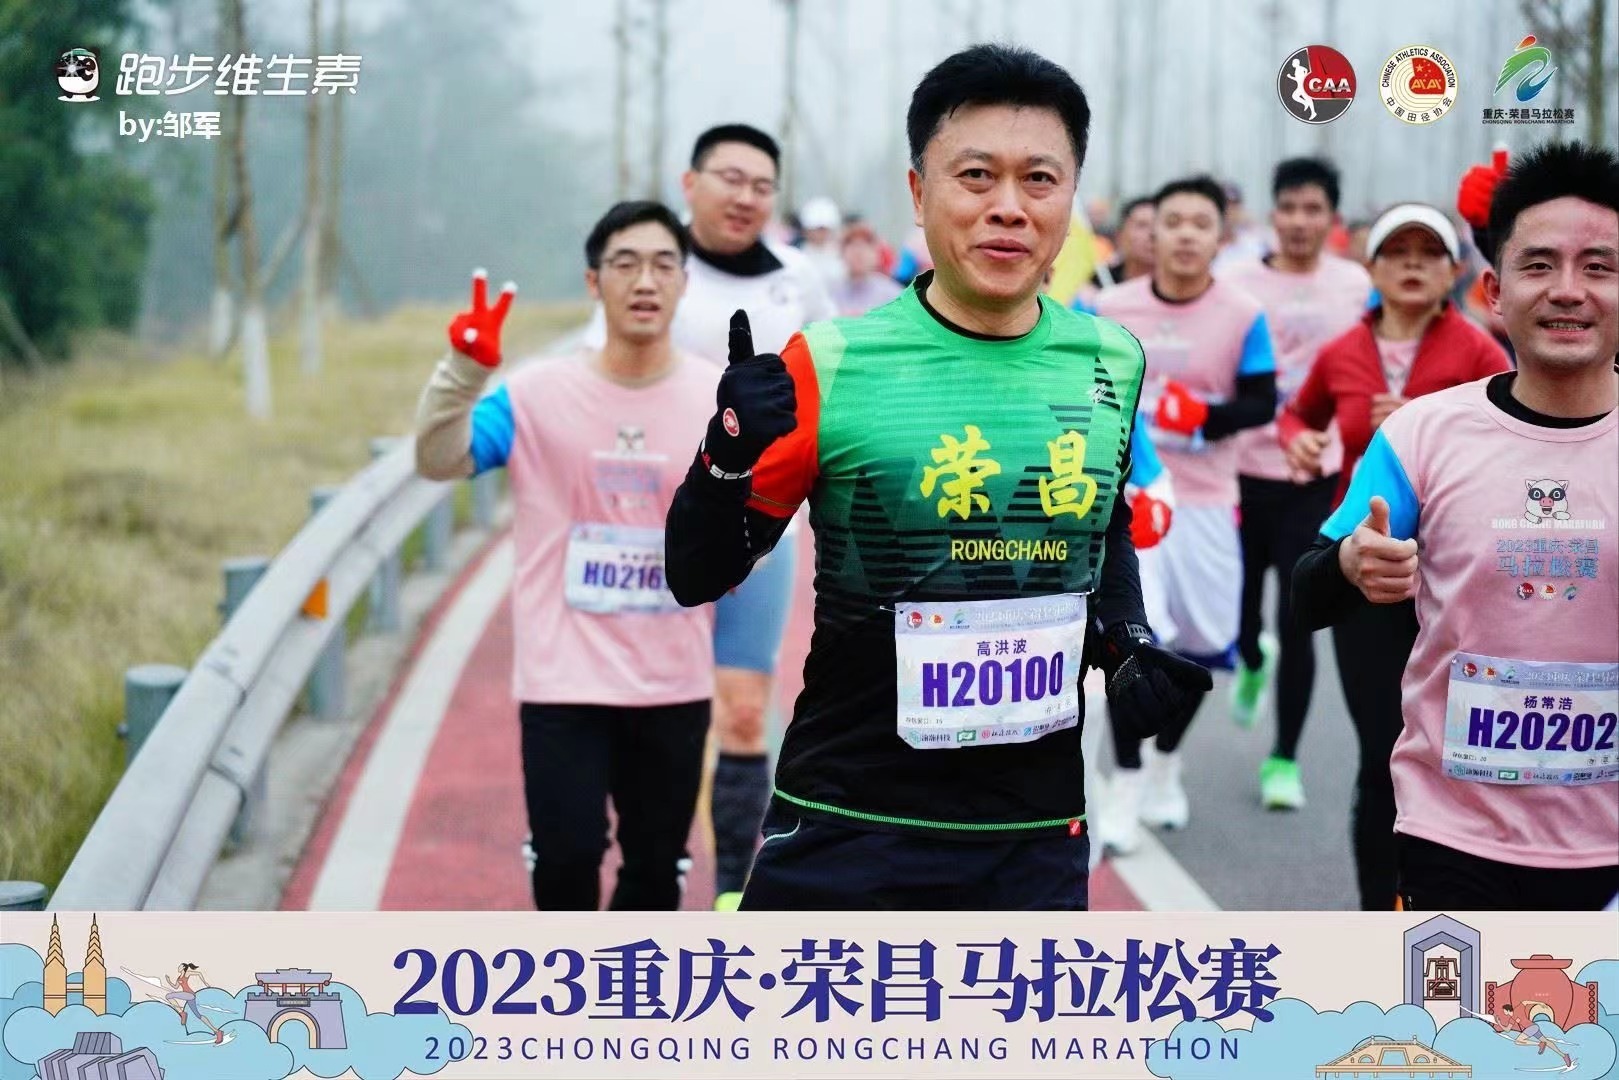 荣昌区委书记高洪波参加“2023年重庆·荣昌马拉松赛”。